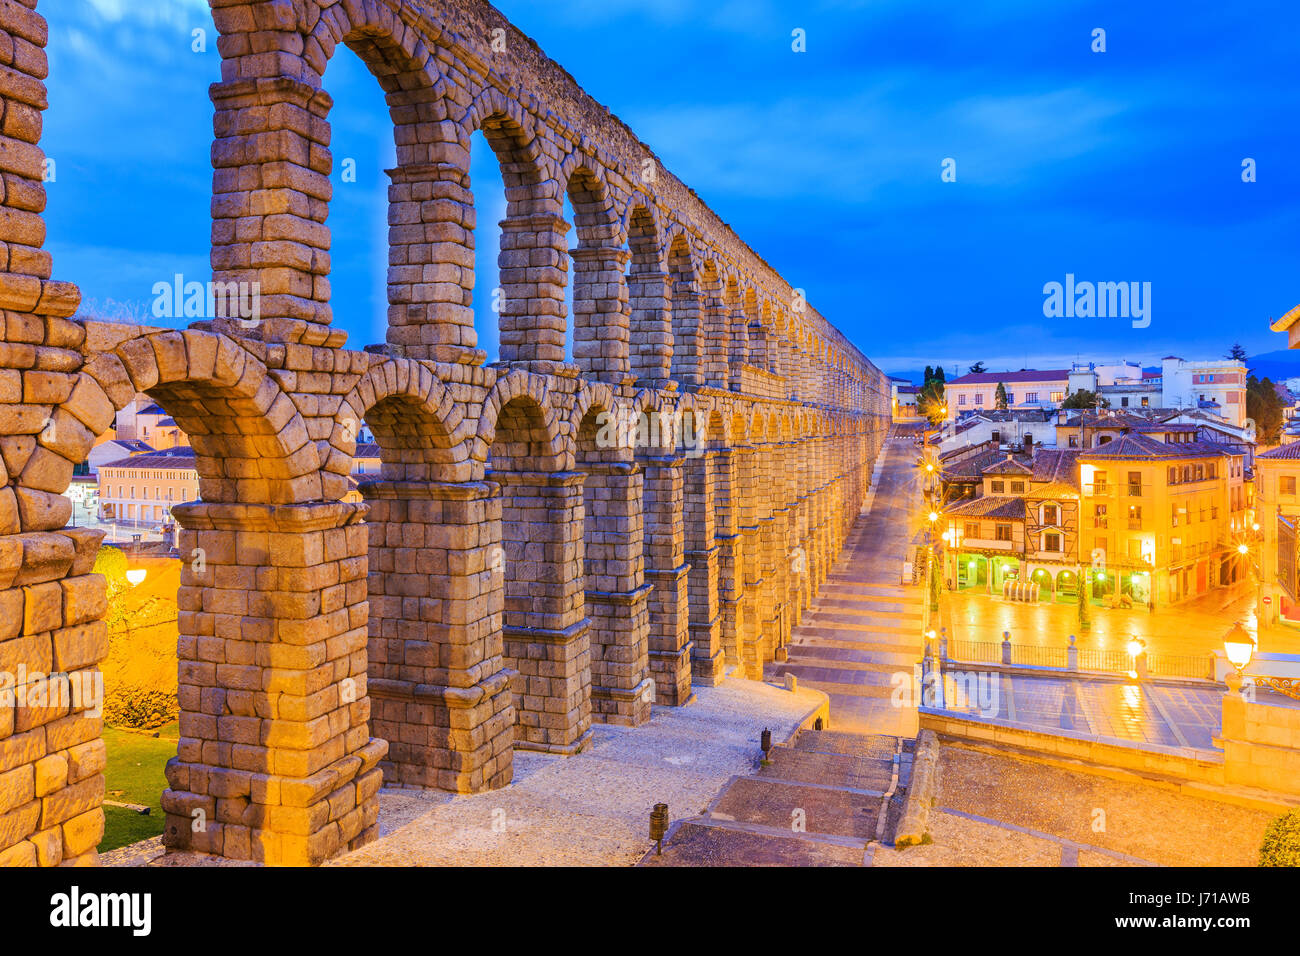 Segovia, Espagne. Vue sur la Plaza del Azoguejo et l'ancien aqueduc romain. Banque D'Images